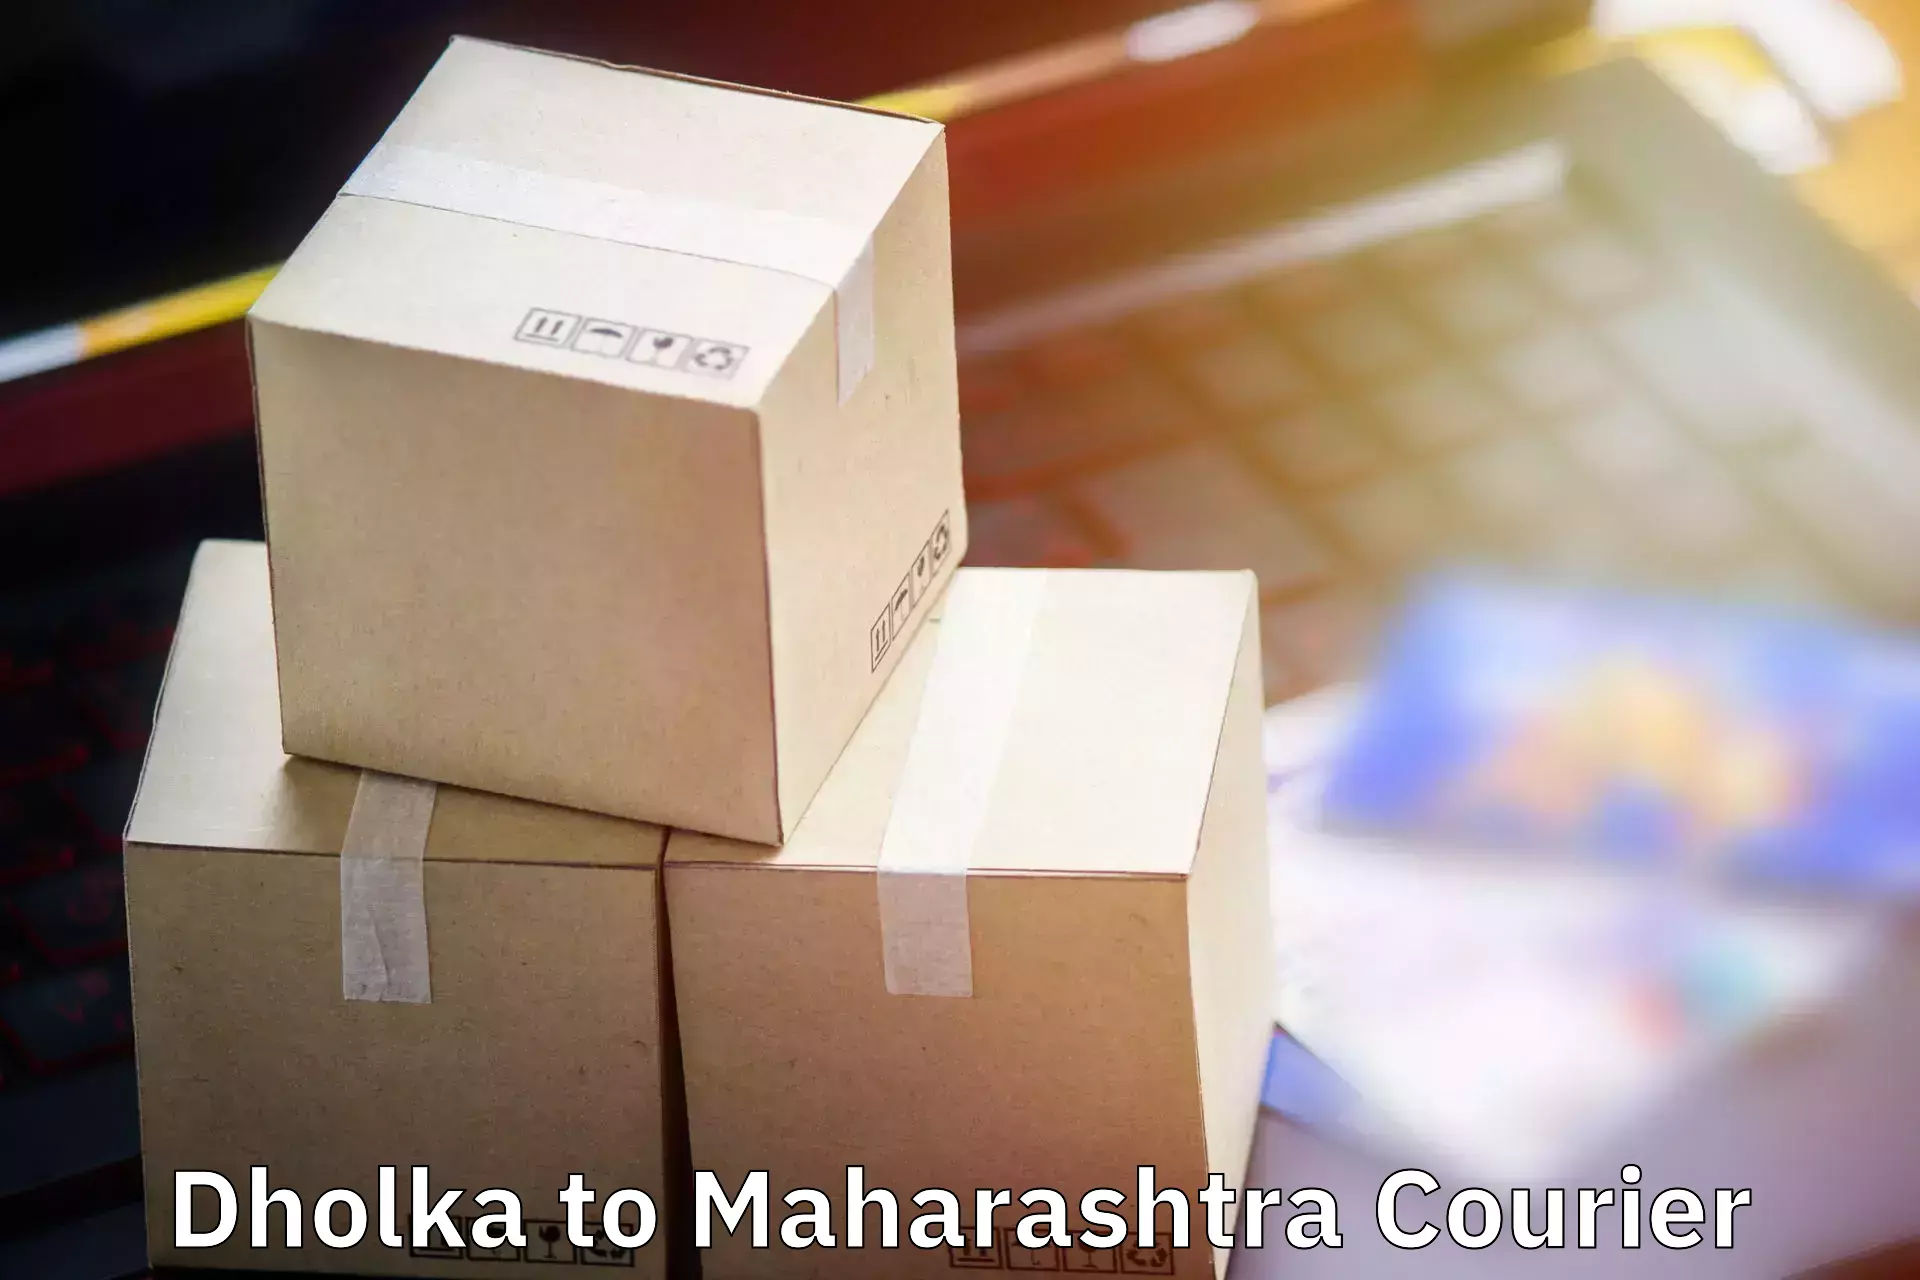 Electronic items luggage shipping Dholka to Maharashtra